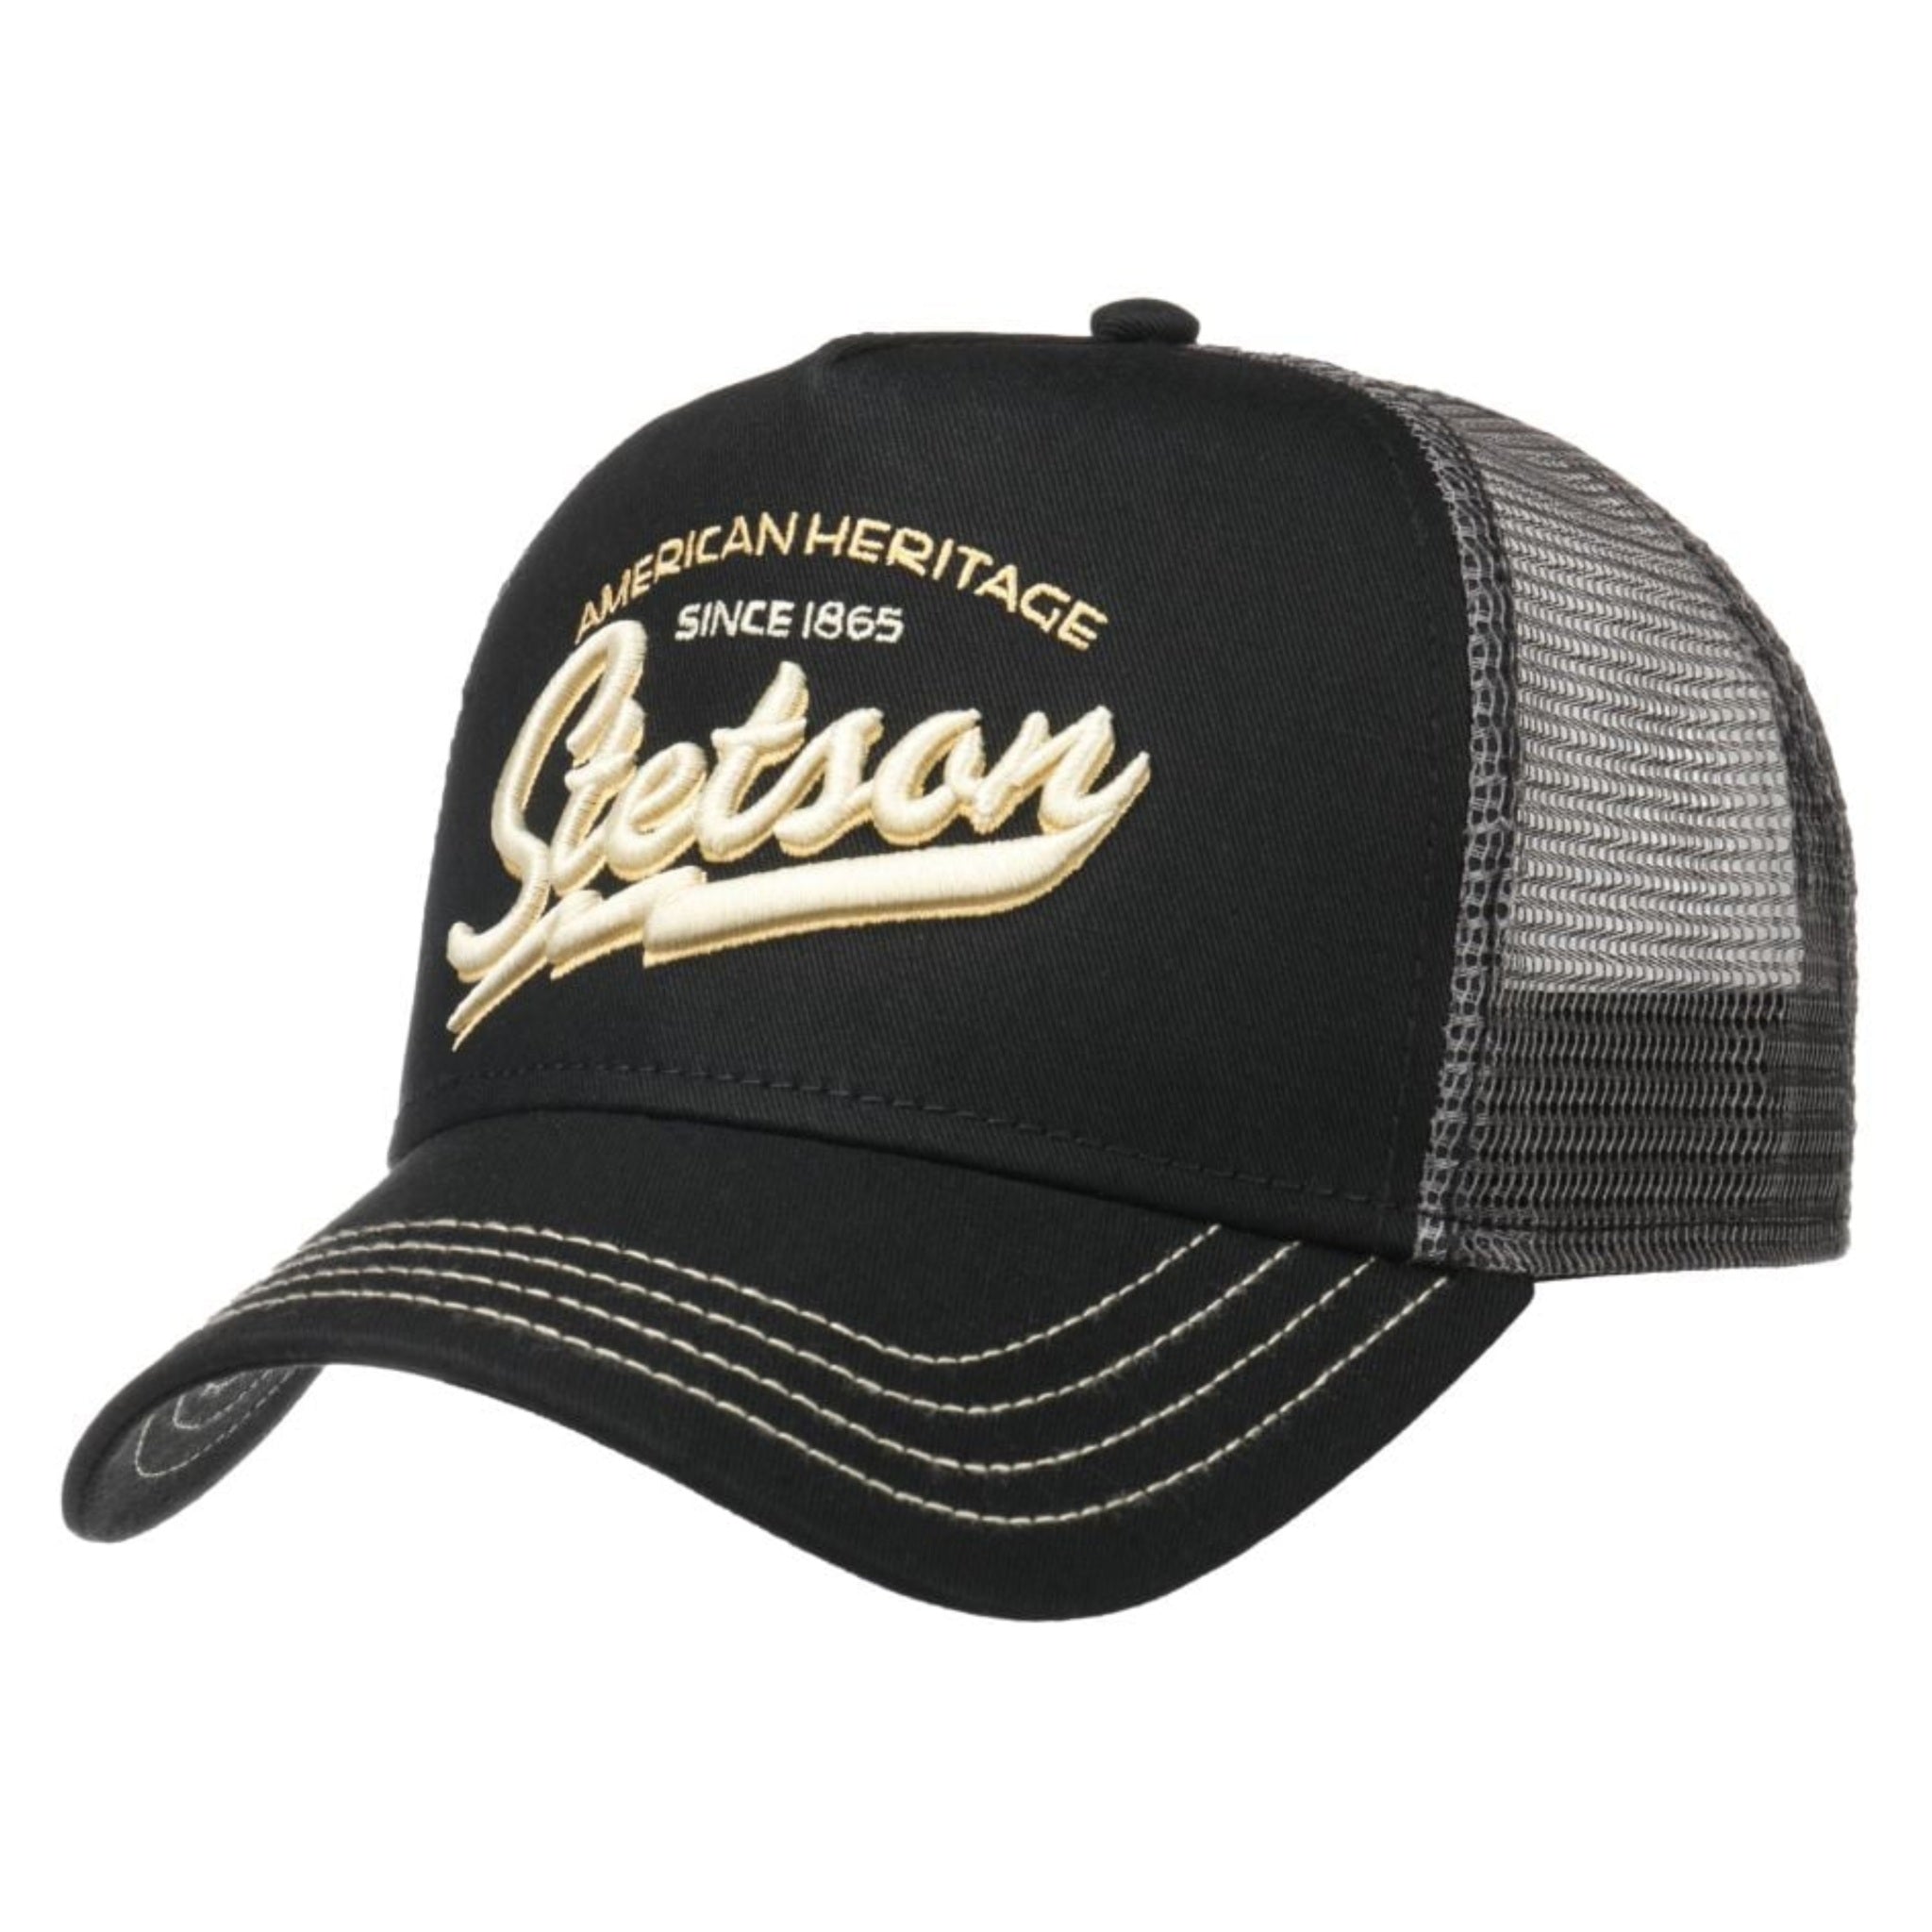 The Hat Shop Stetson Since 1865 Trucker Cap 'Black'